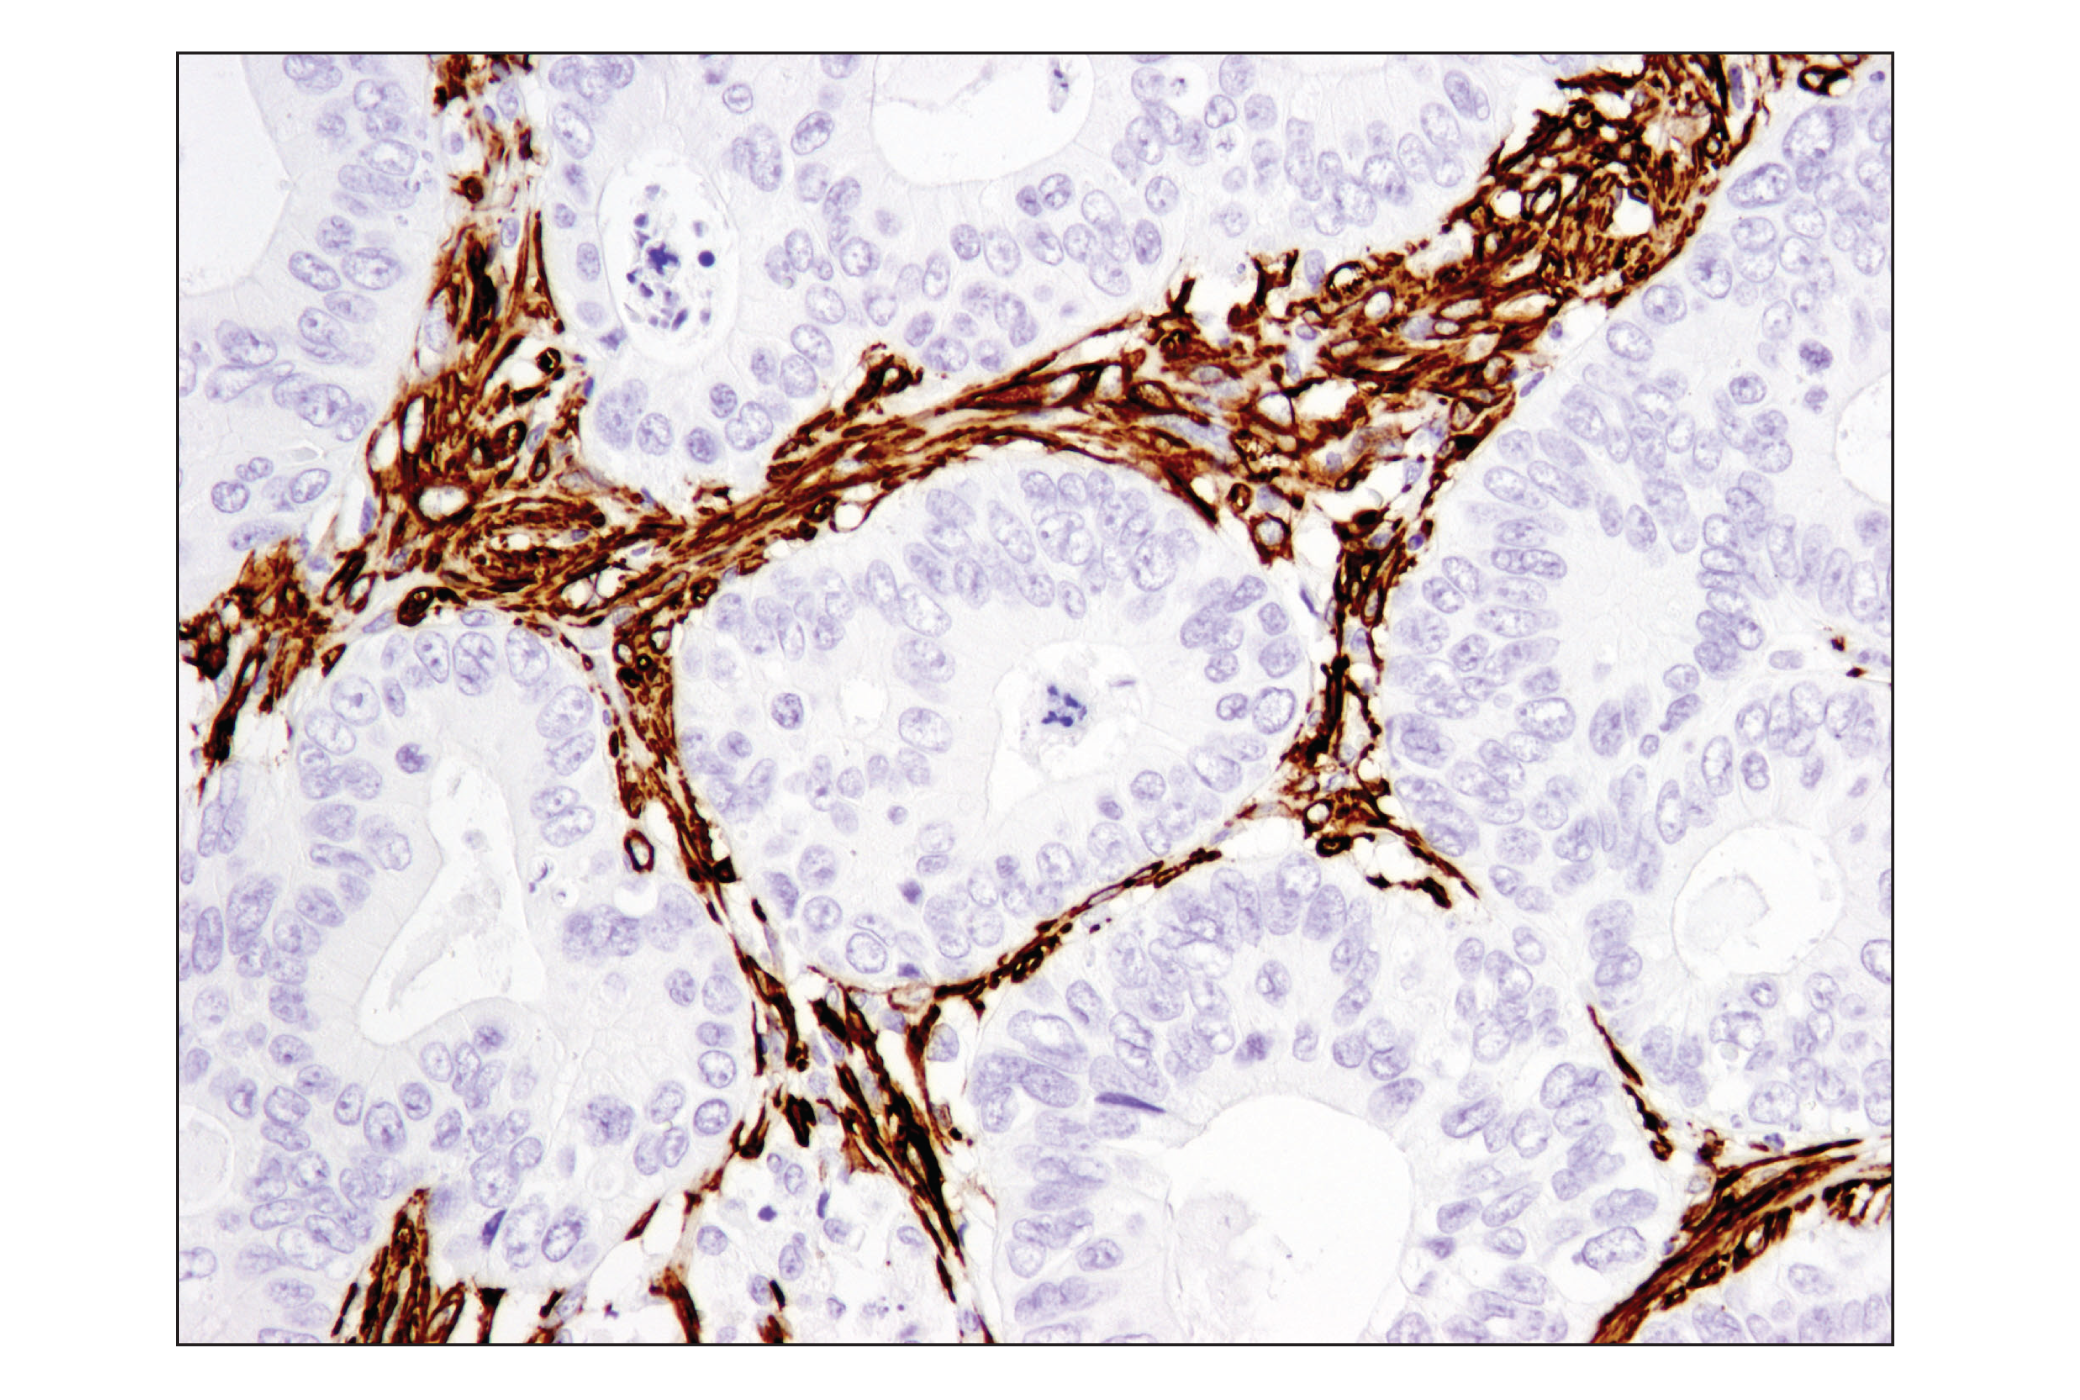  Image 29: TGF-β Fibrosis Pathway Antibody Sampler Kit